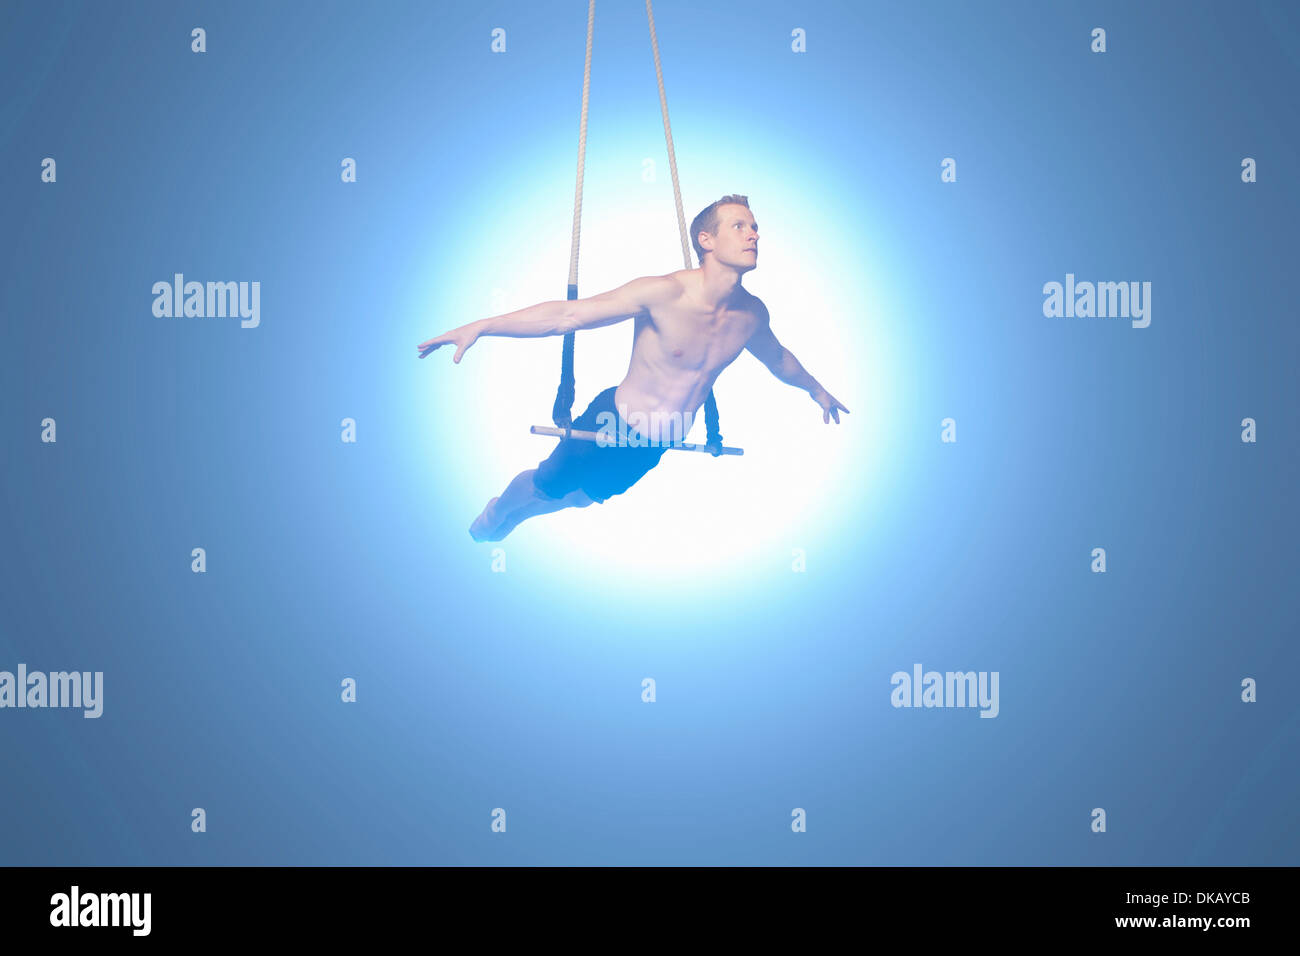 Man balancing on trapeze Stock Photo